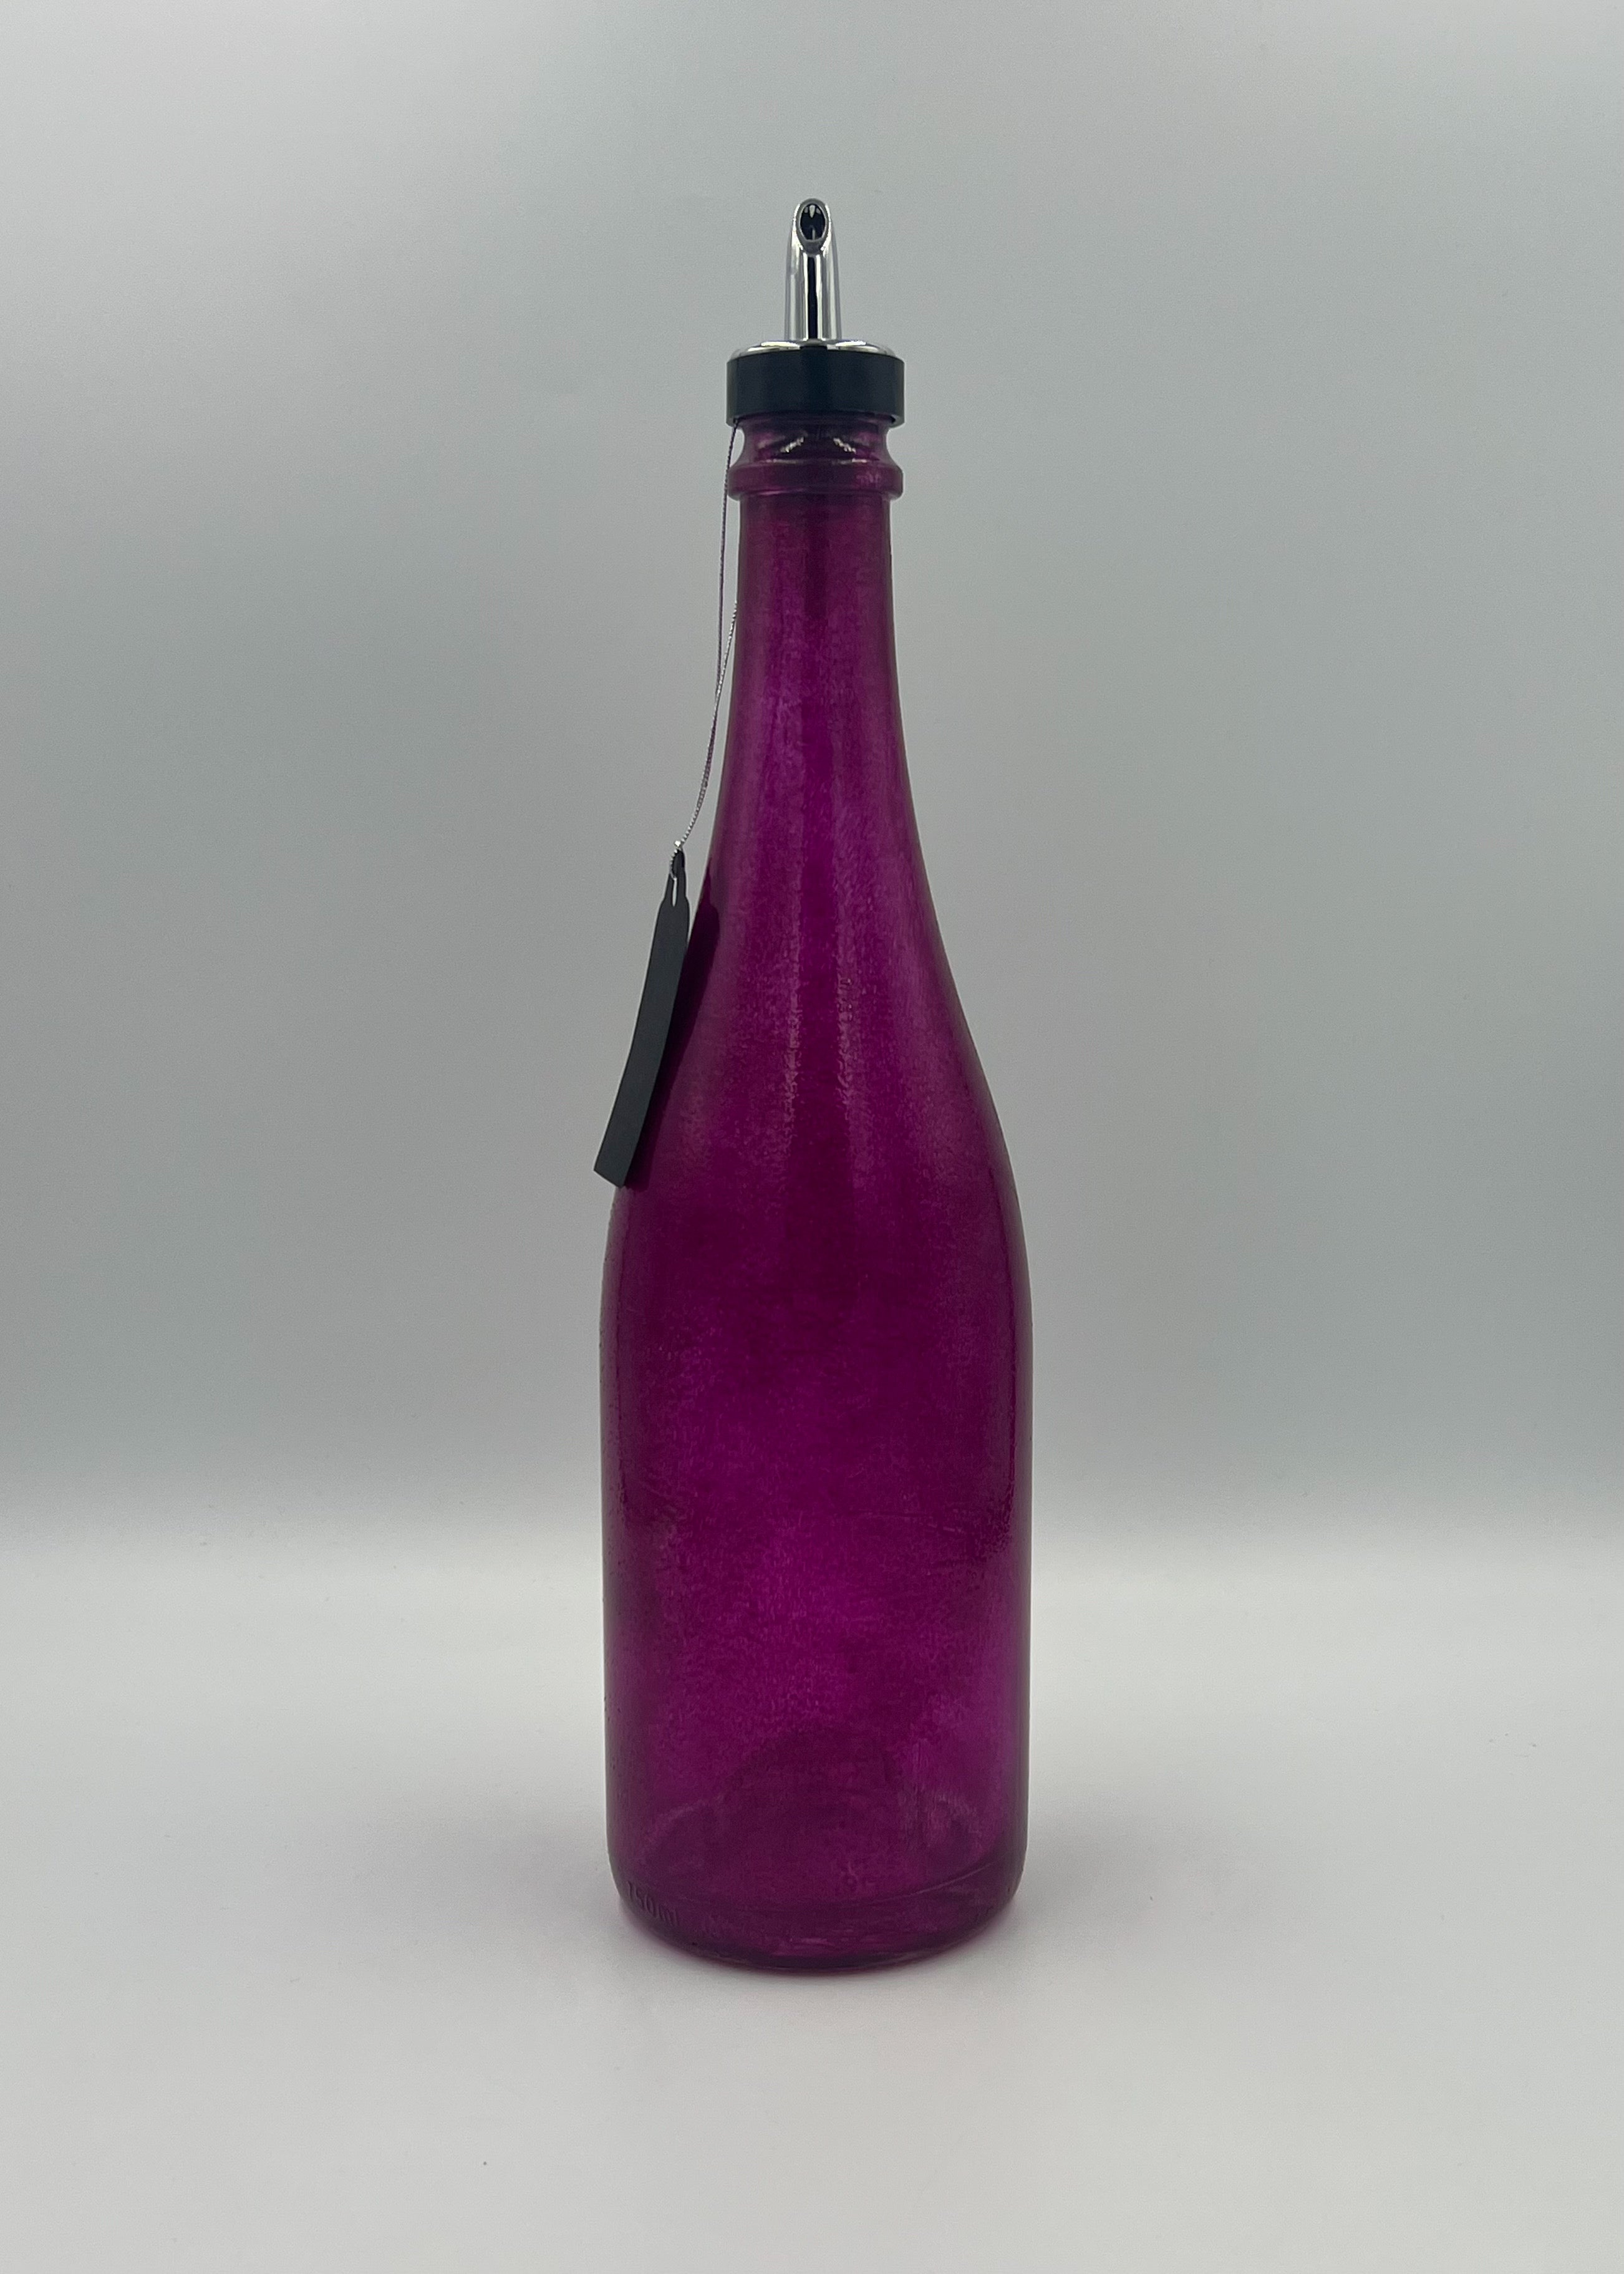 Buy 7-purple-13-inch TM Liquid Dispenser - Large